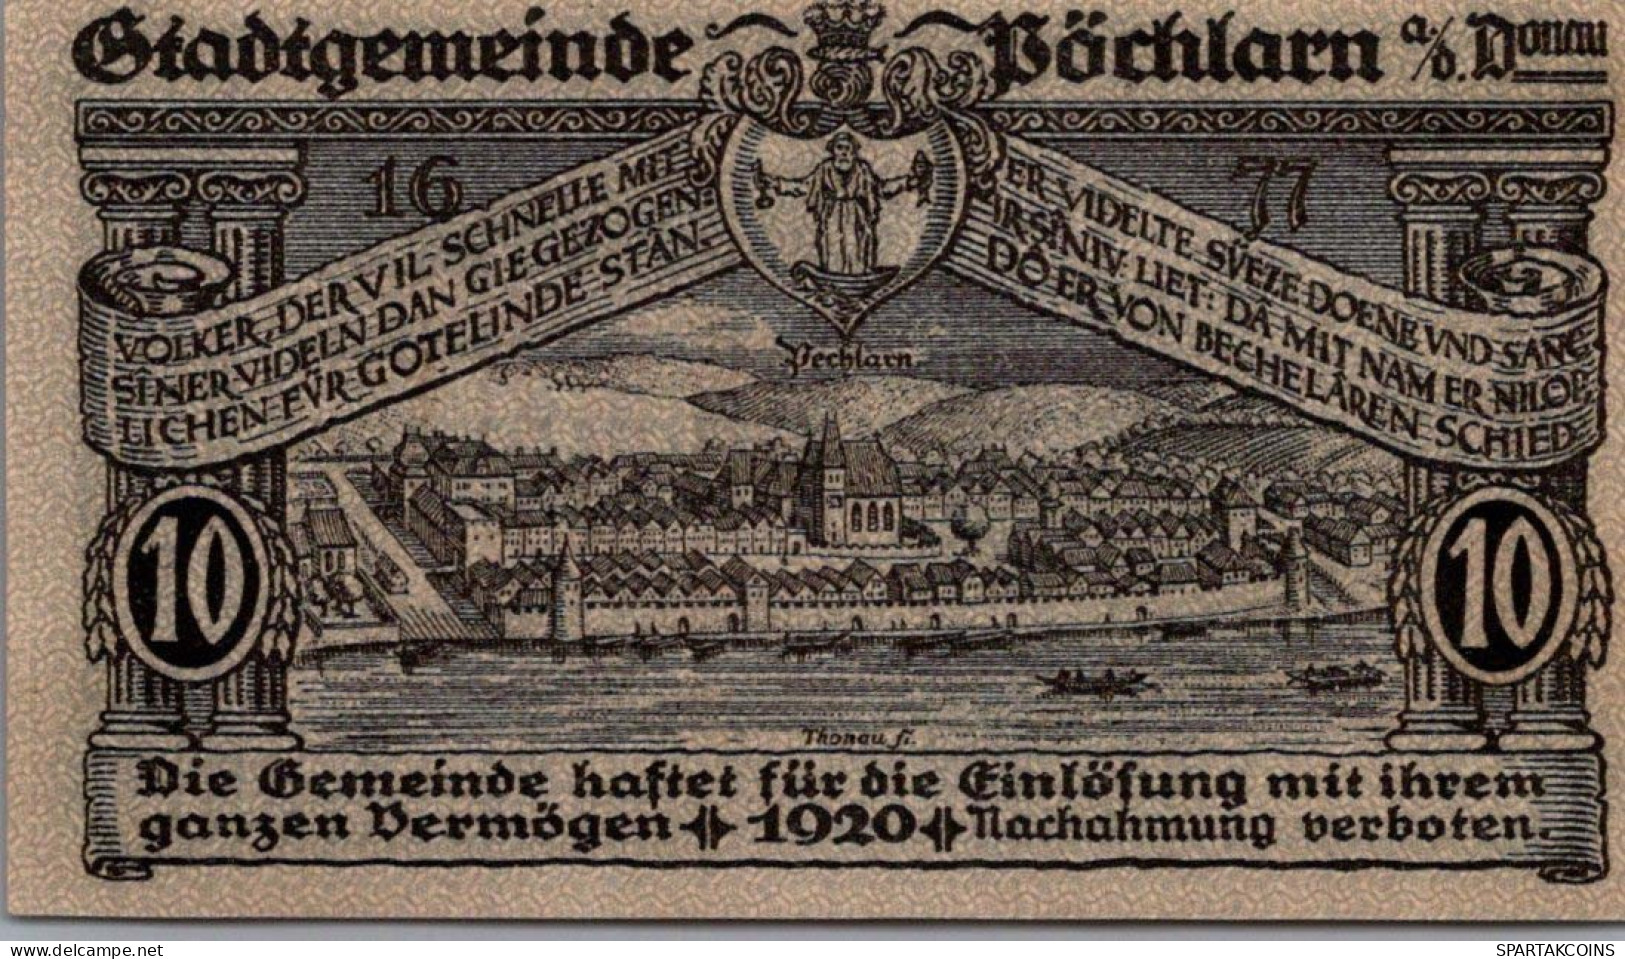 10 HELLER 1920 Stadt PoCHLARN Niedrigeren Österreich Notgeld Banknote #PE399 - [11] Local Banknote Issues